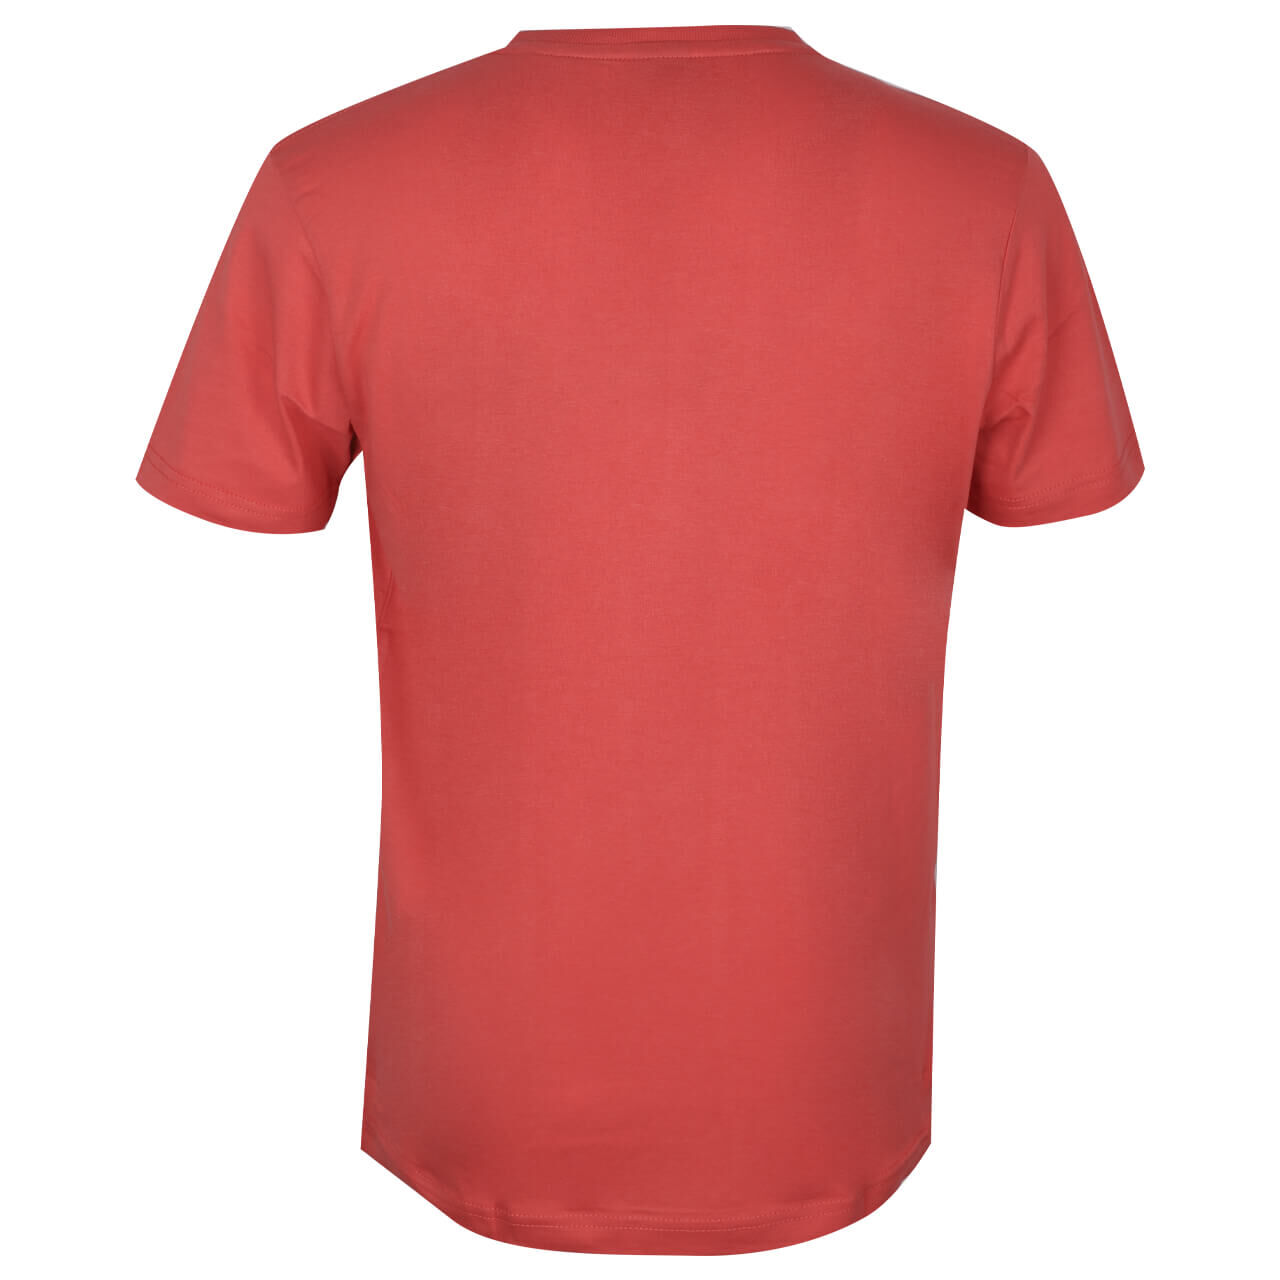 Lerros Herren Serafino T-Shirt hibiscus red printed 